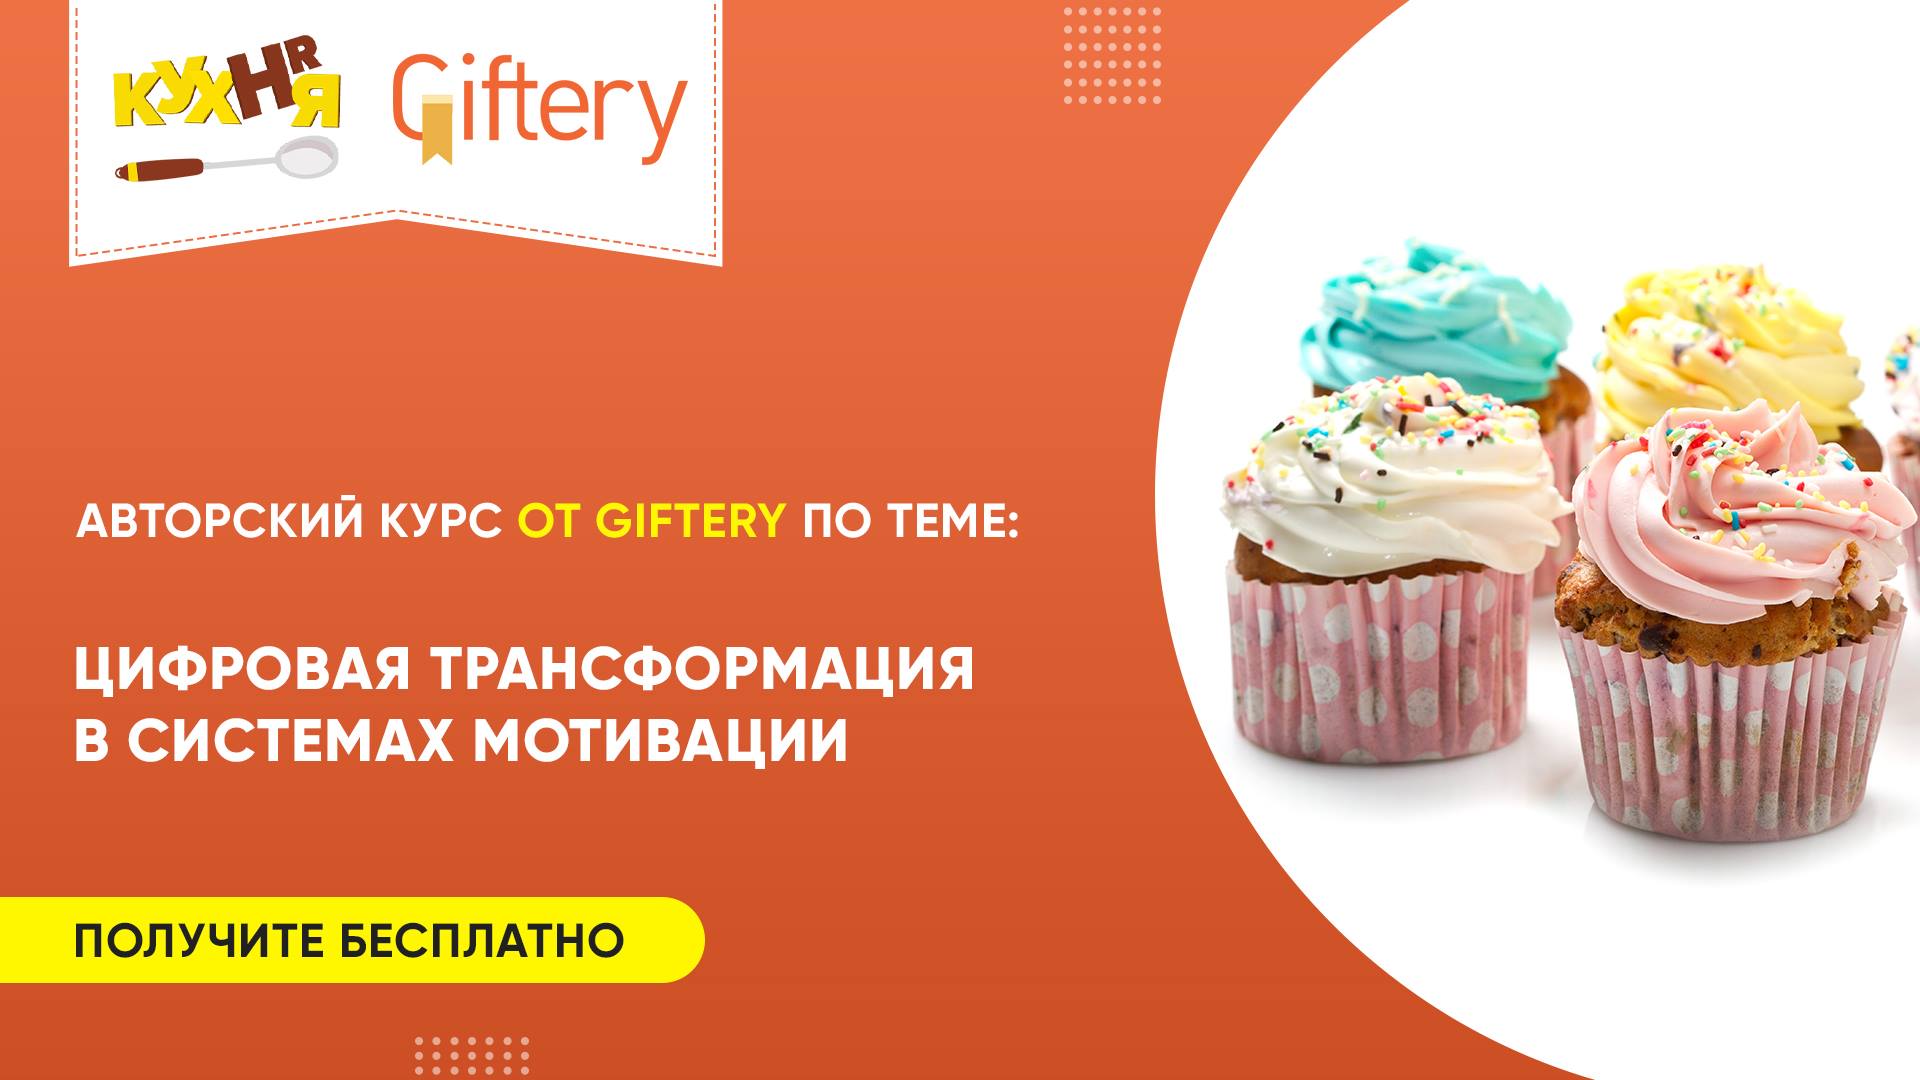 Chery giftery. HR кухня. Сертификат Giftery. Гифтери премиум. Гифтери логотип.